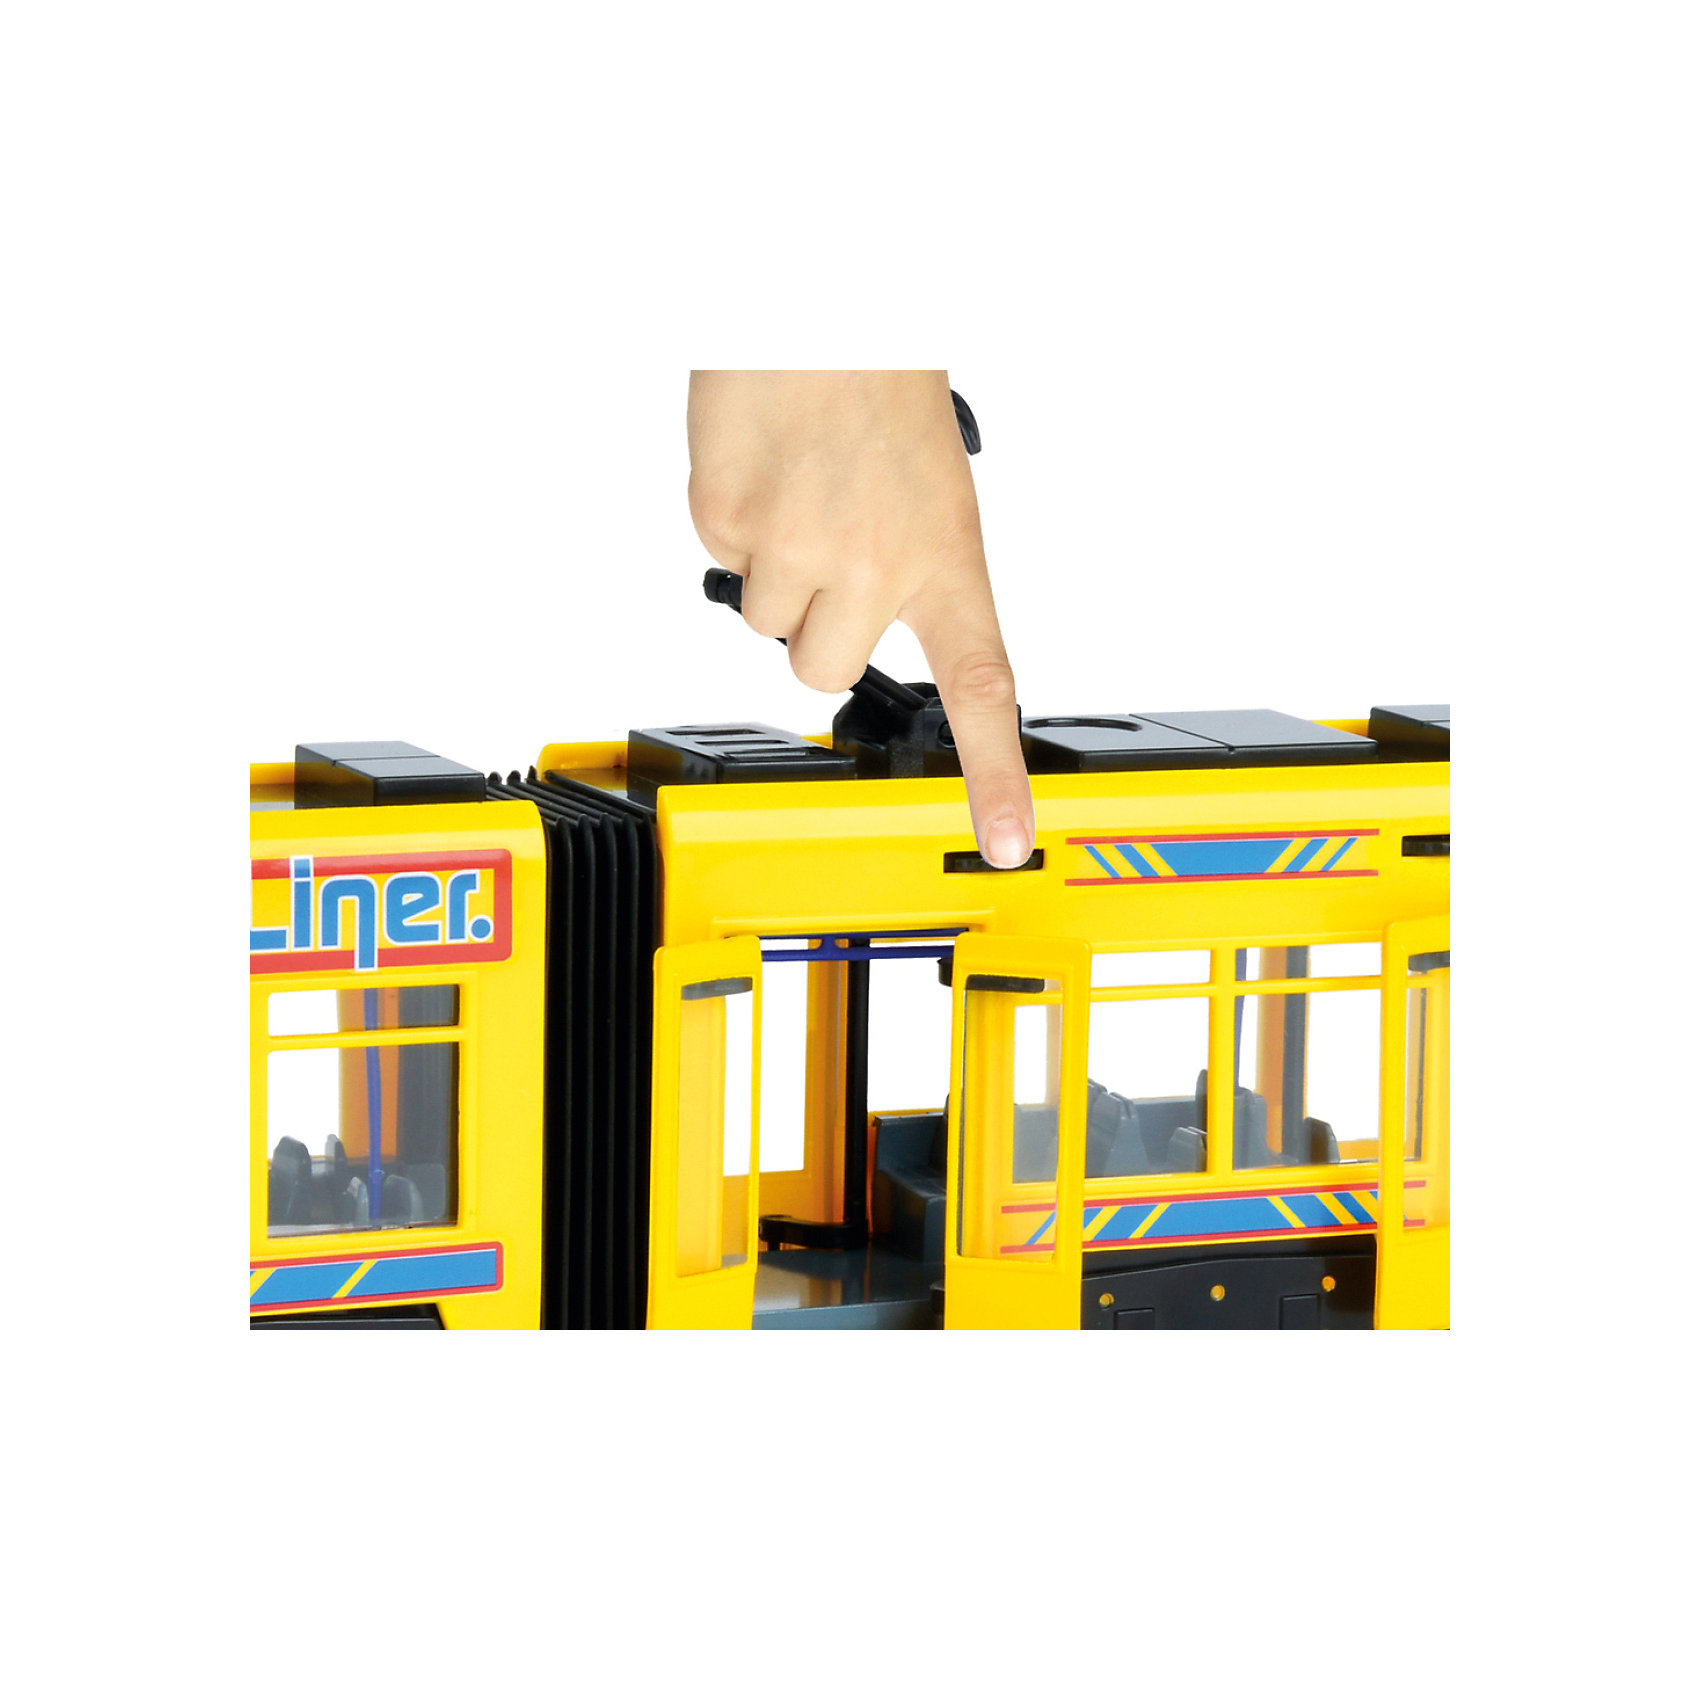 Городской трамвай желтый, 46 см Dickie Toys 13005859